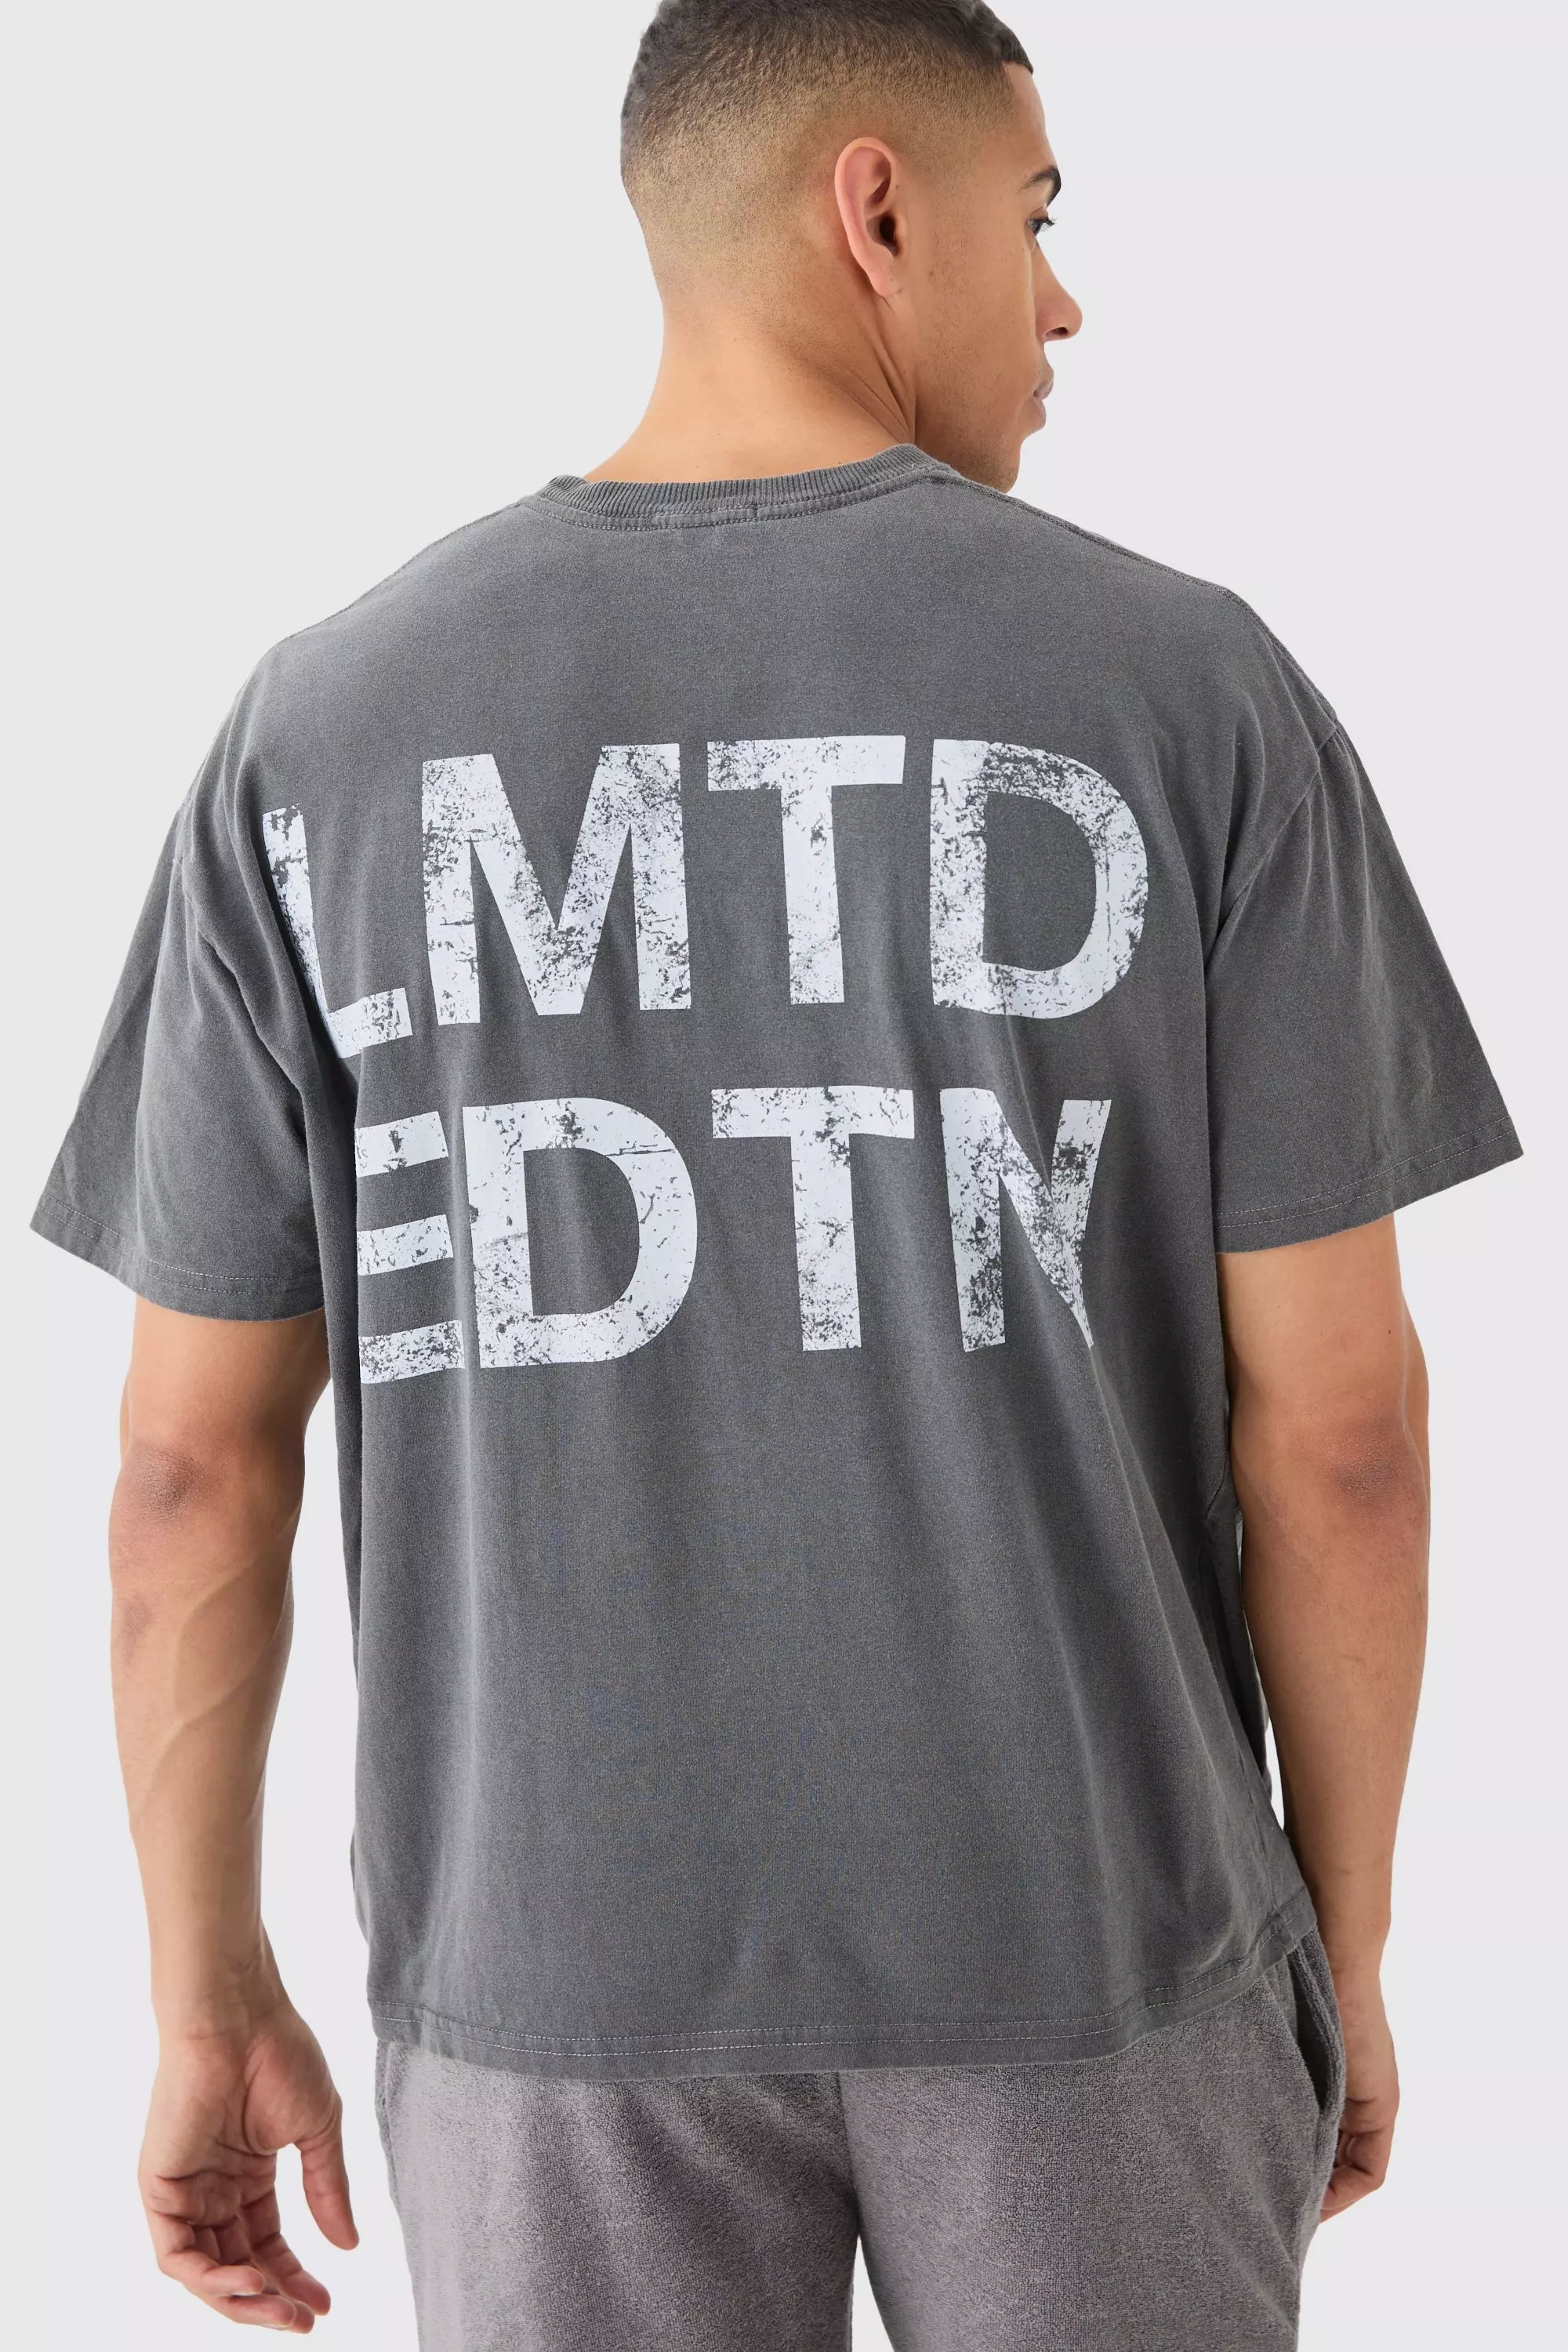 Oversized Lmtd Overdye T-shirt Charcoal